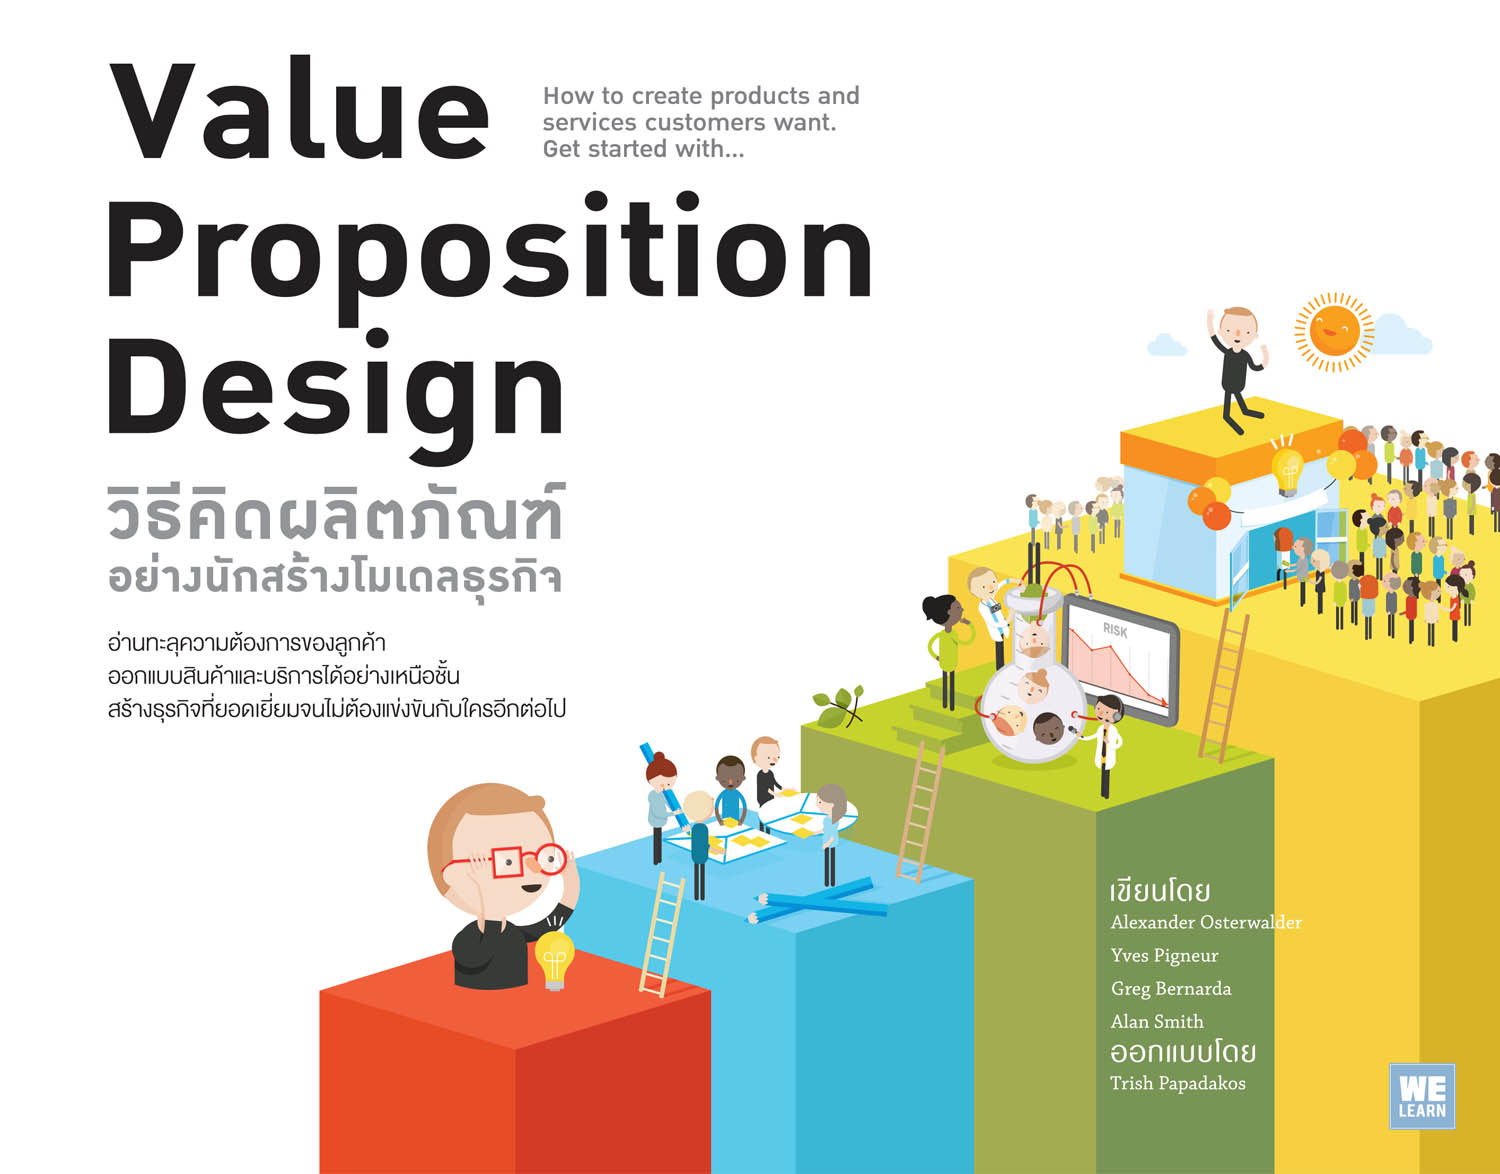 วิธีคิดผลิตภัณฑ์อย่างนักสร้างโมเดลธุรกิจ  (Value Proposition Design)